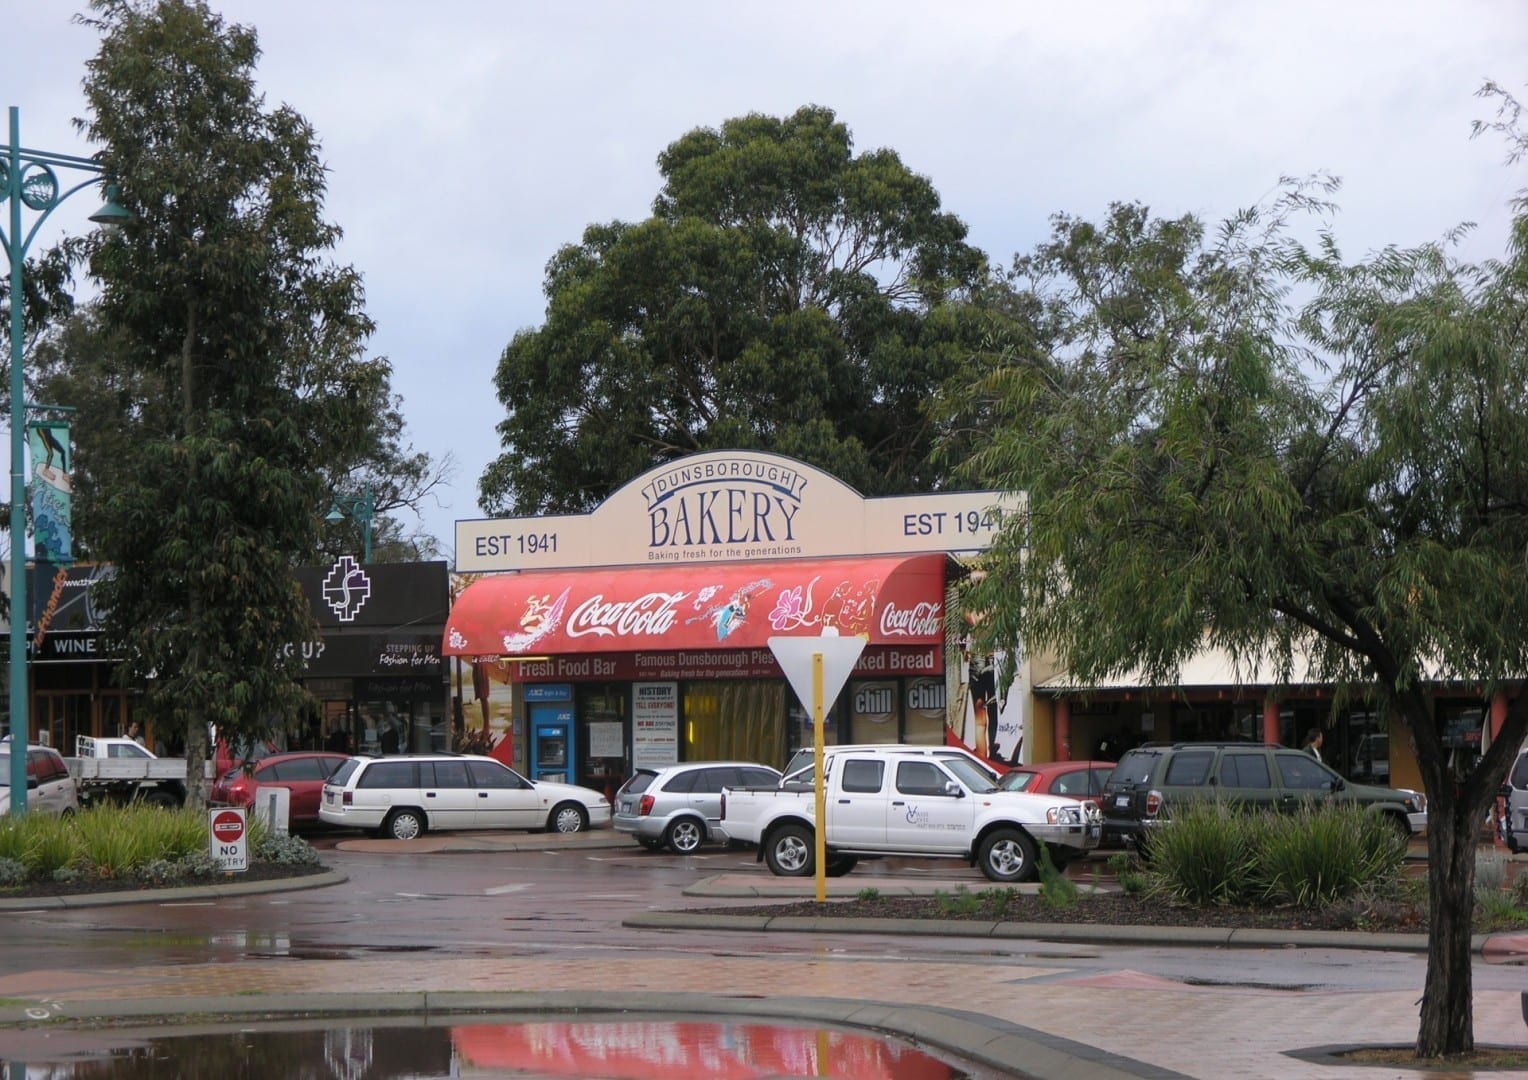 La popular panadería Dunsborough Dunsborough Australia